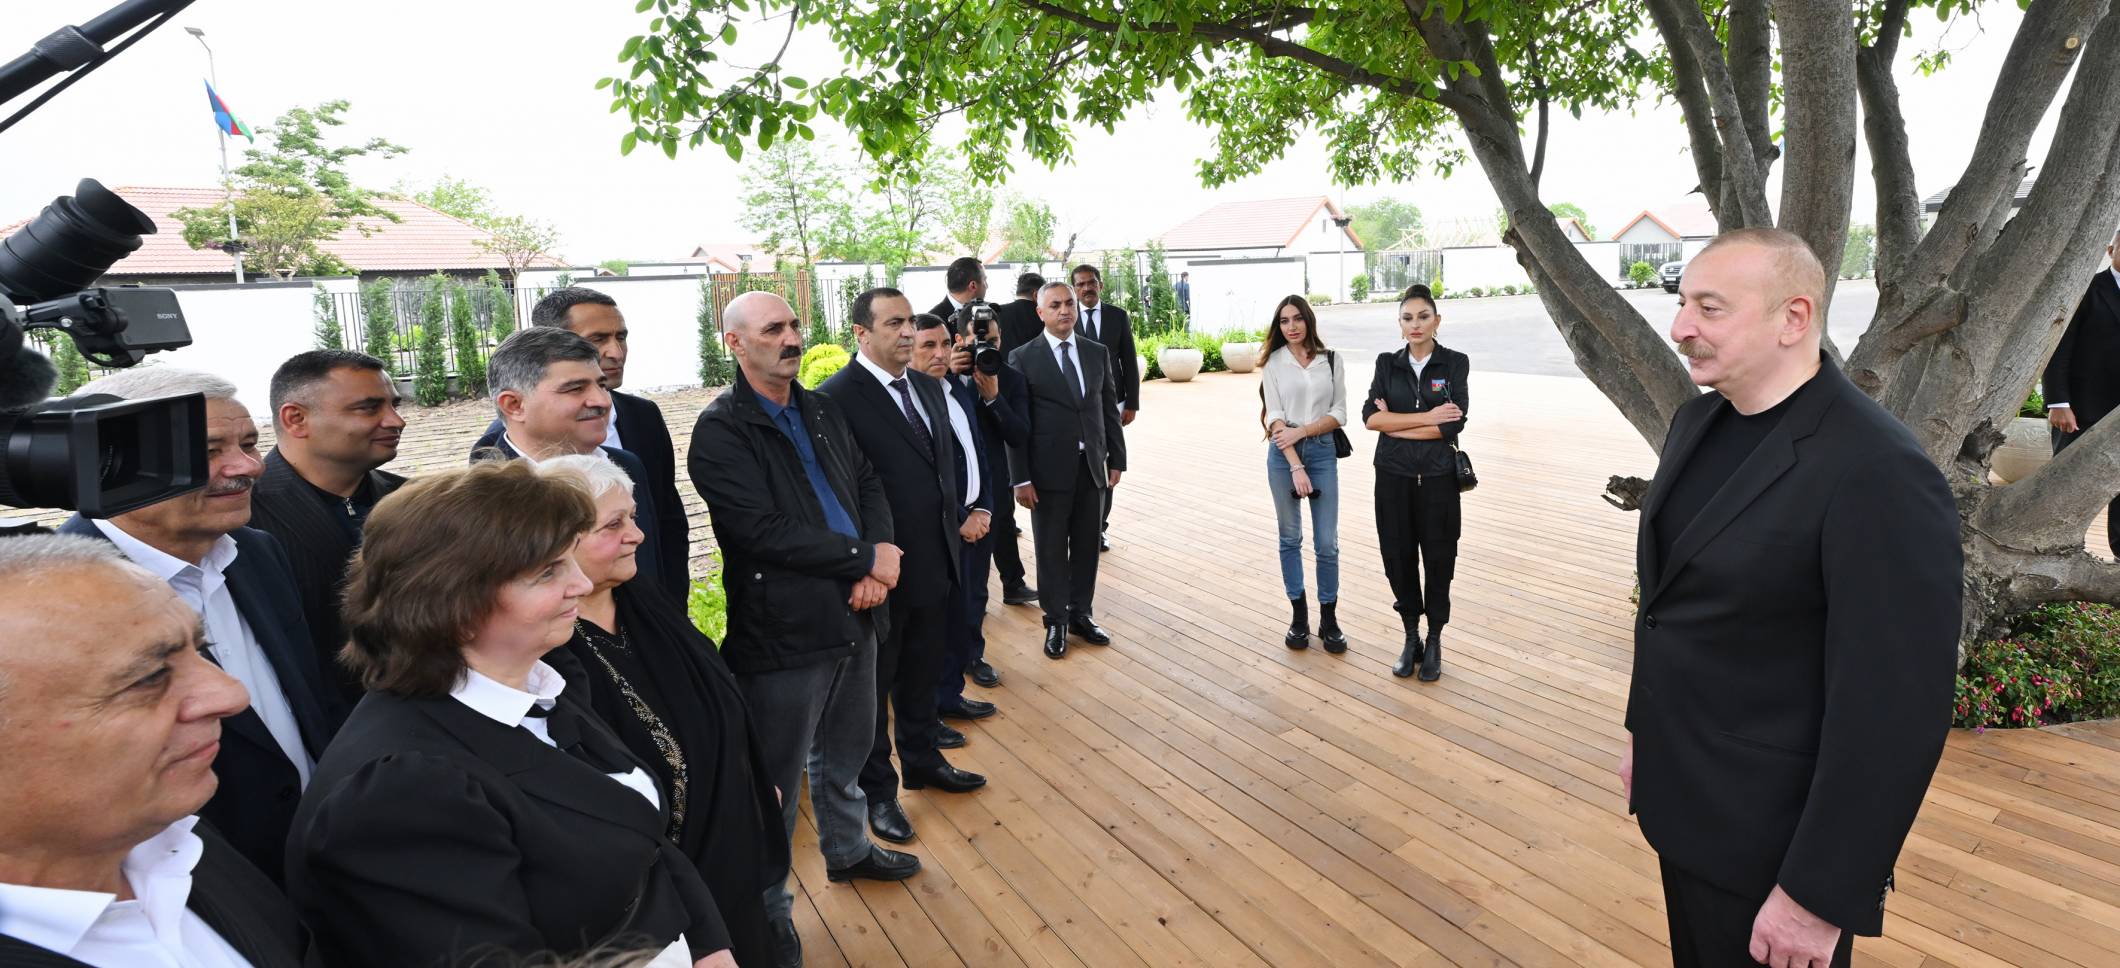 Ильхам Алиев и первая леди Мехрибан Алиева встретились с жителями, переселившимися в город Ходжалы